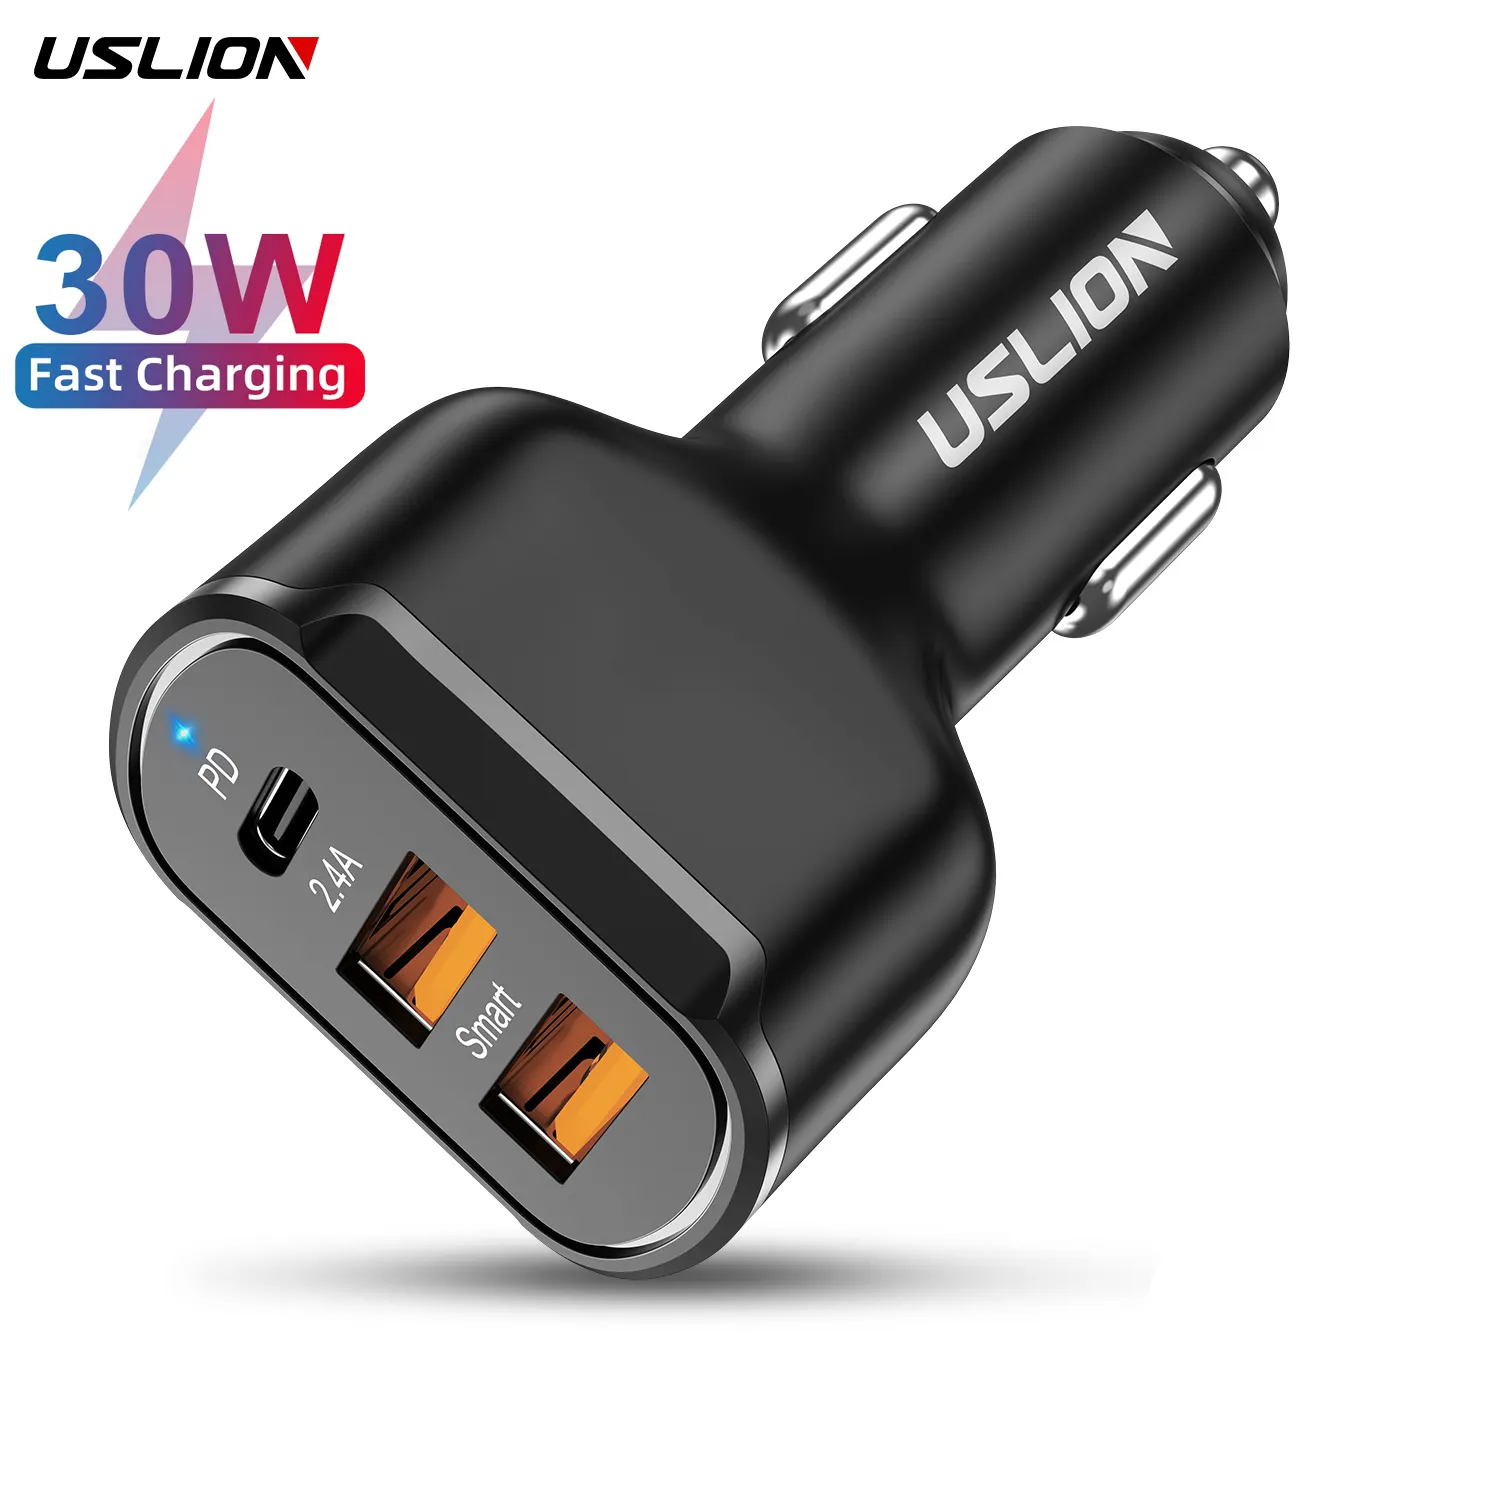 USLION เครื่องชาร์จในรถแบบเร็ว30W,ที่ชาร์จในรถยนต์แบบ3 USB ชาร์จเร็ว PD3.0ใช้ได้กับโทรศัพท์มือถือทุกรุ่น Type C ชาร์จเร็วสำหรับ iPhone